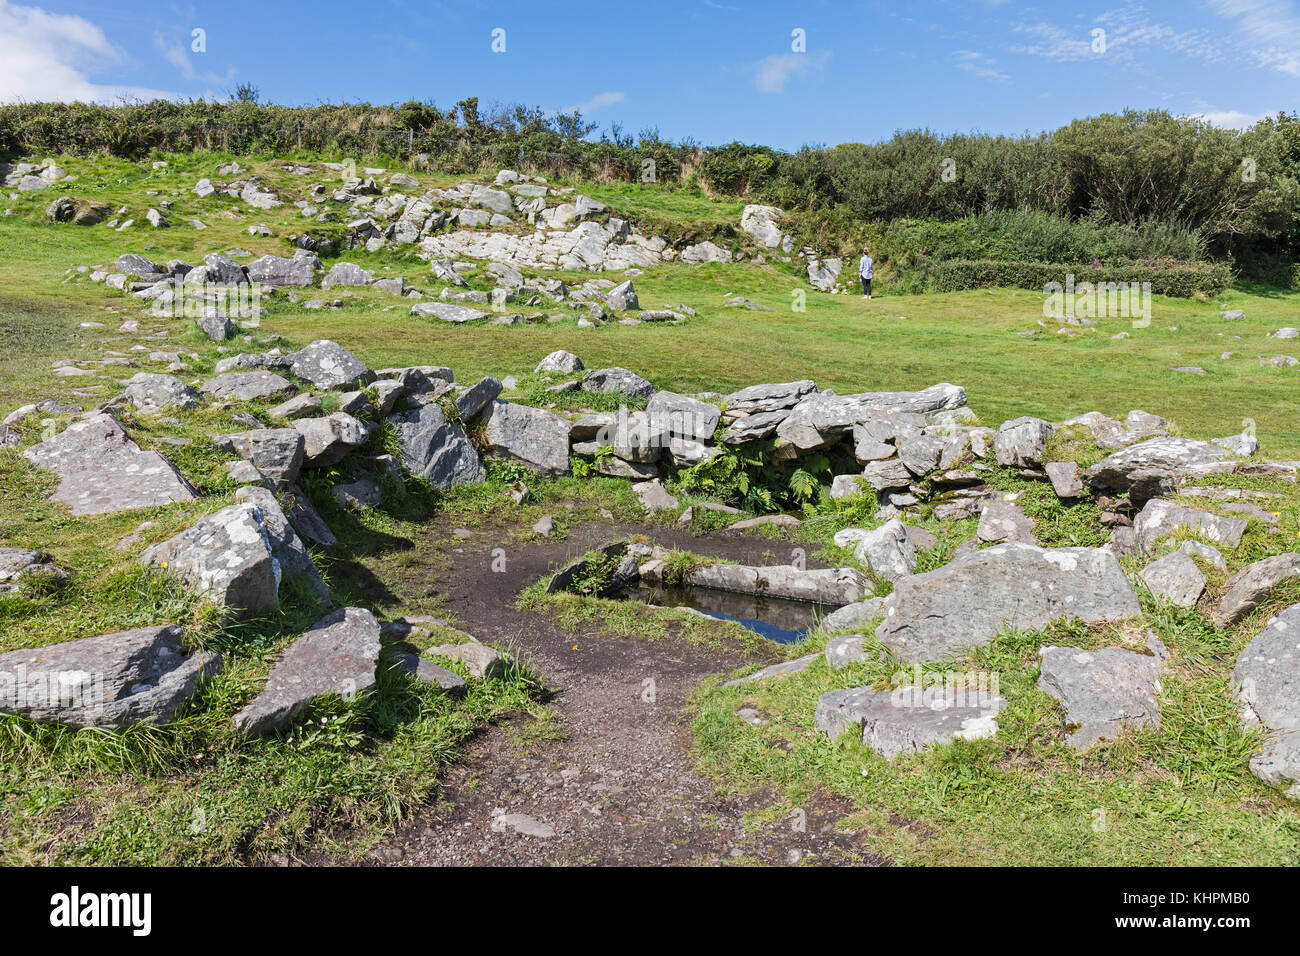 Cerca de glandore, condado de Cork, República de Irlanda, el fulacht fiadh, un antiguo lugar de cocción, en el sitio de la yacente drombeg círculo de piedra. Foto de stock